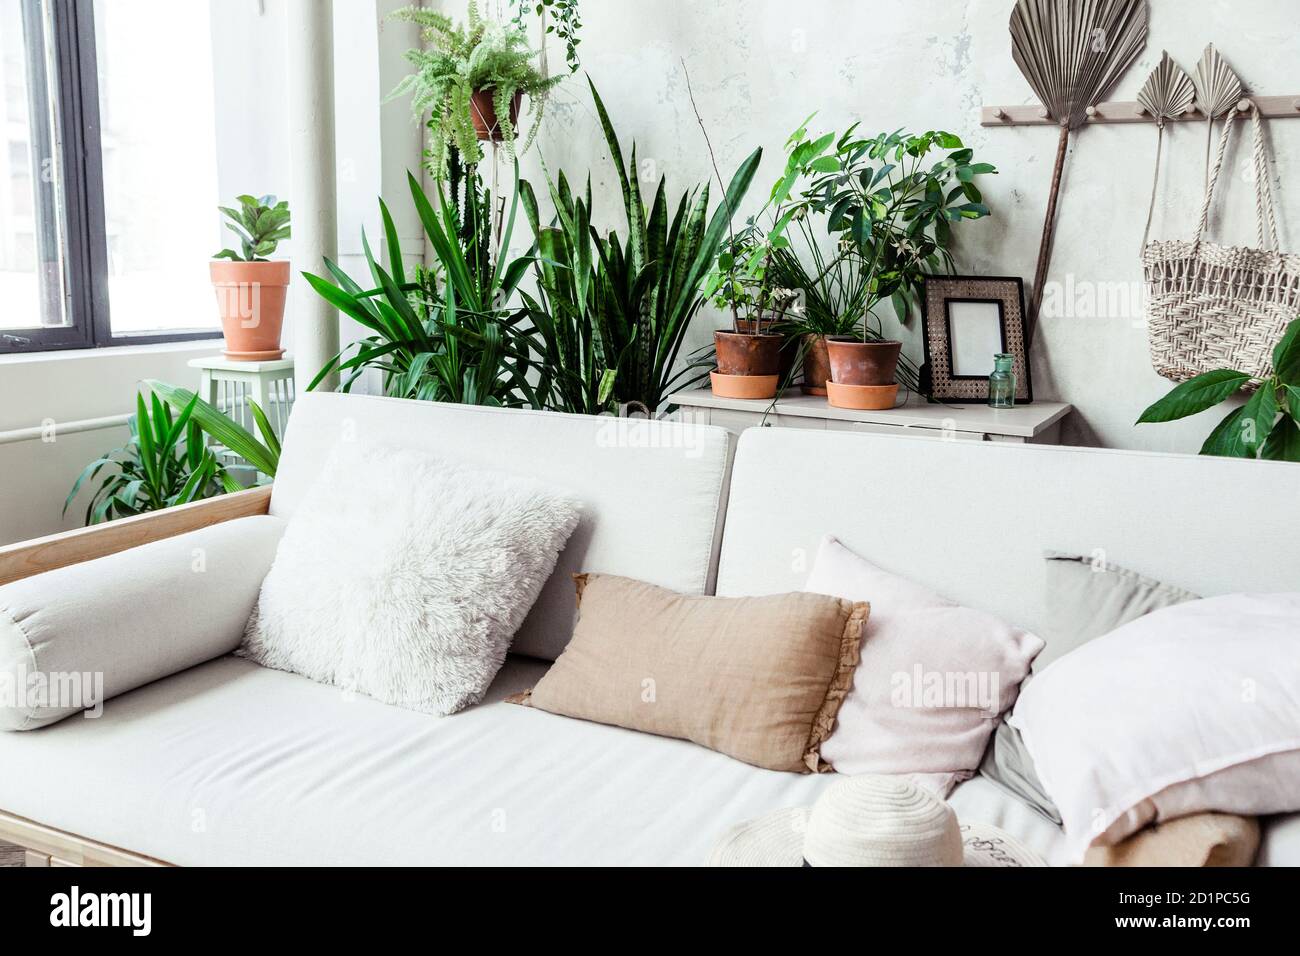 Sofá ligero con almohadas contra una pared gris. Hay muchos potes de plantas verdes detrás del sofá. Foto de stock